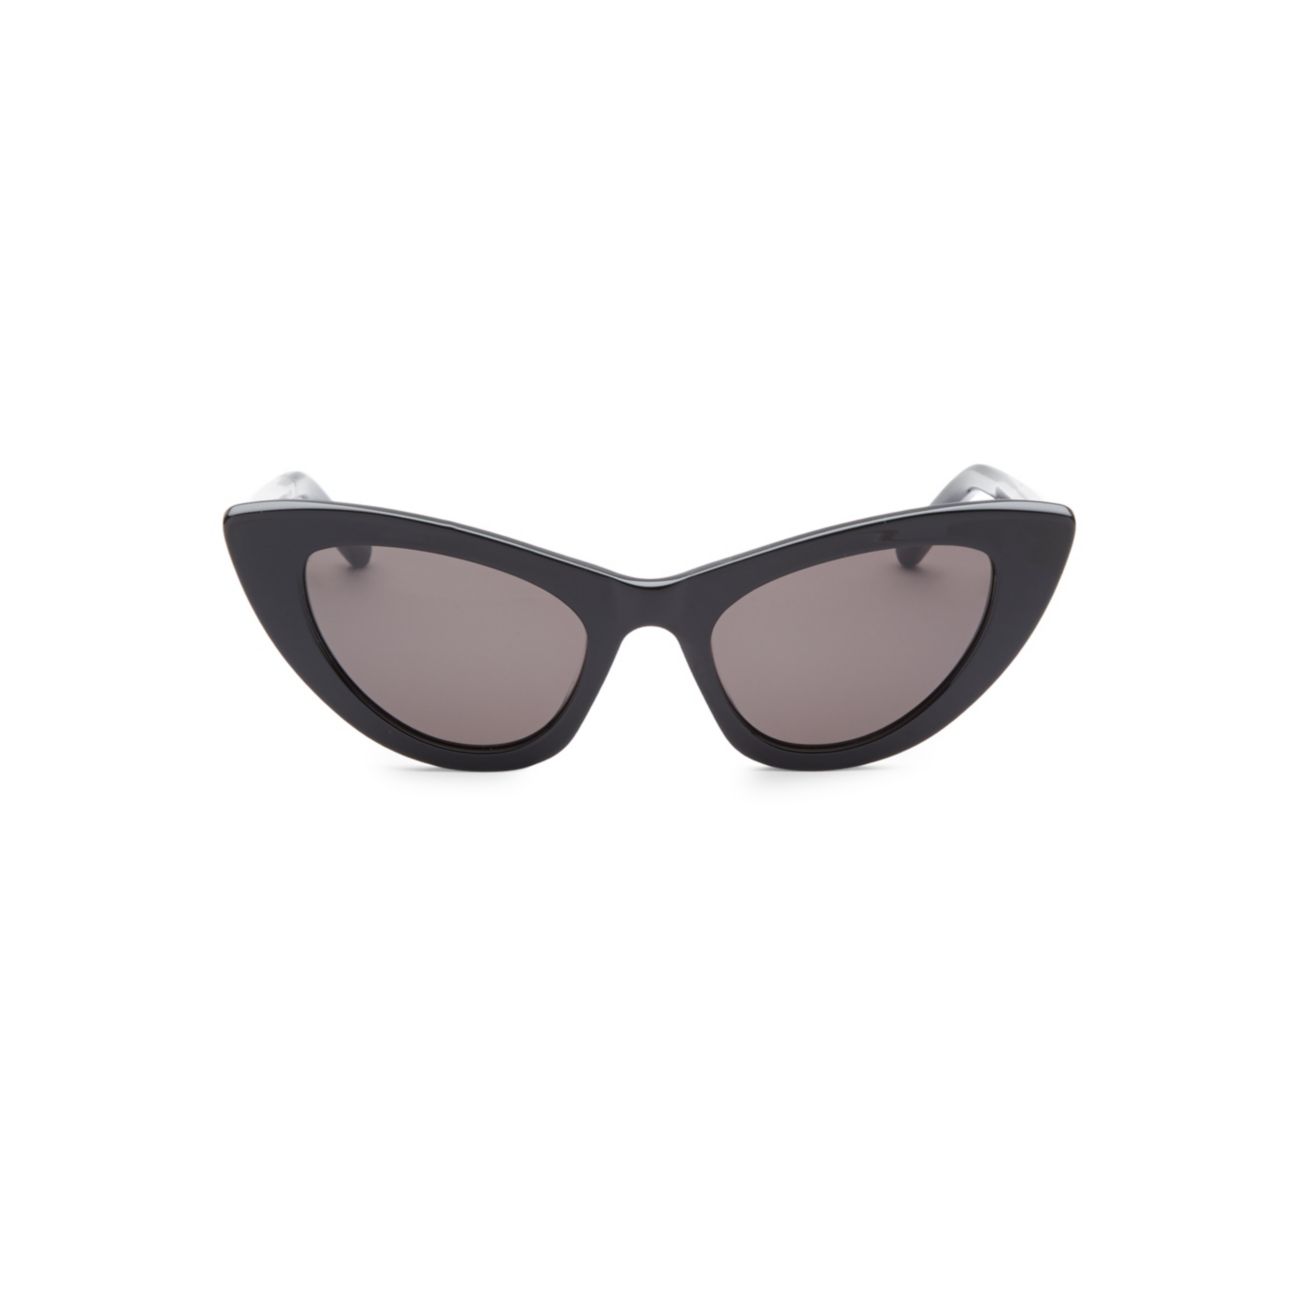 Черные солнцезащитные очки New Wave 213 Lily 52 мм Saint Laurent